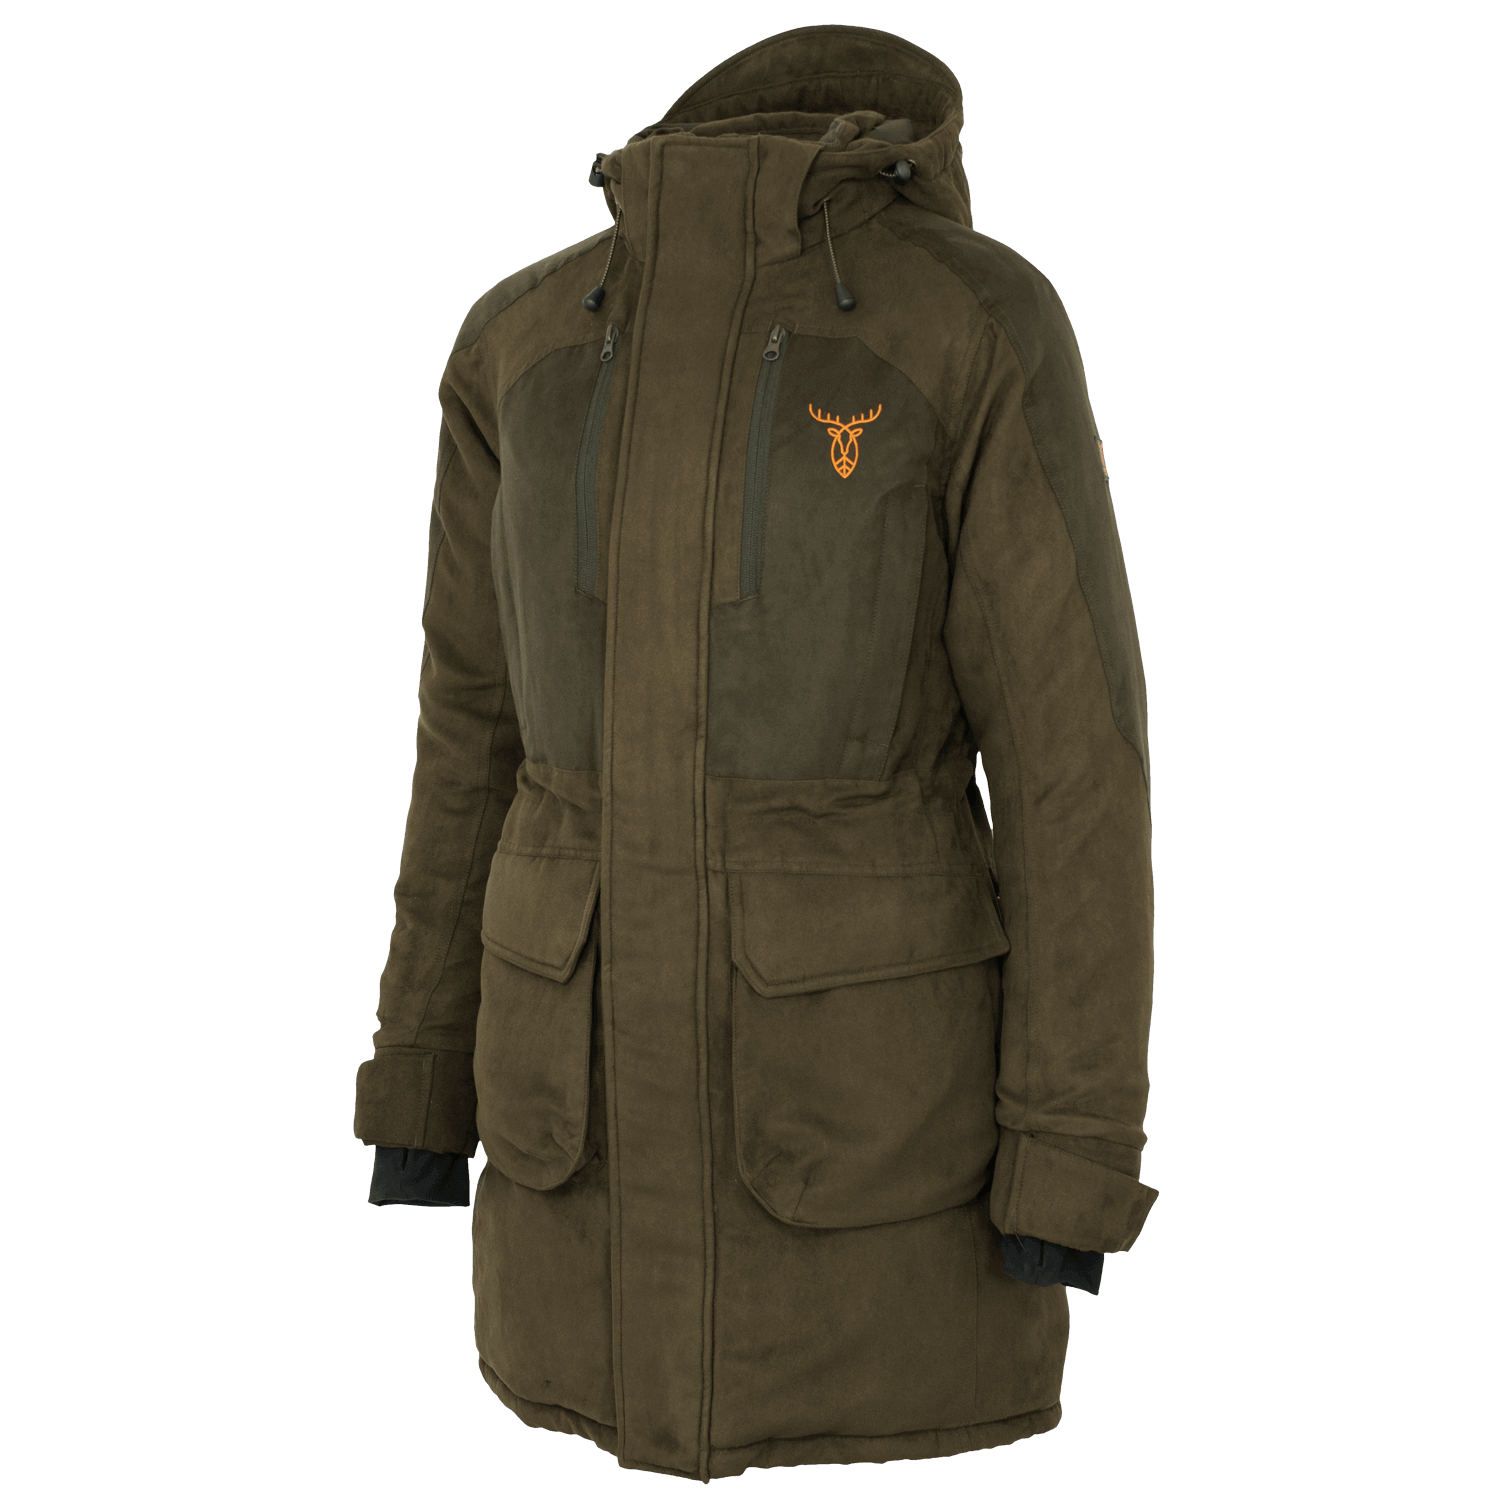 Pirscher Gear Polar Ladies Winter Jacket - Hunting Jackets